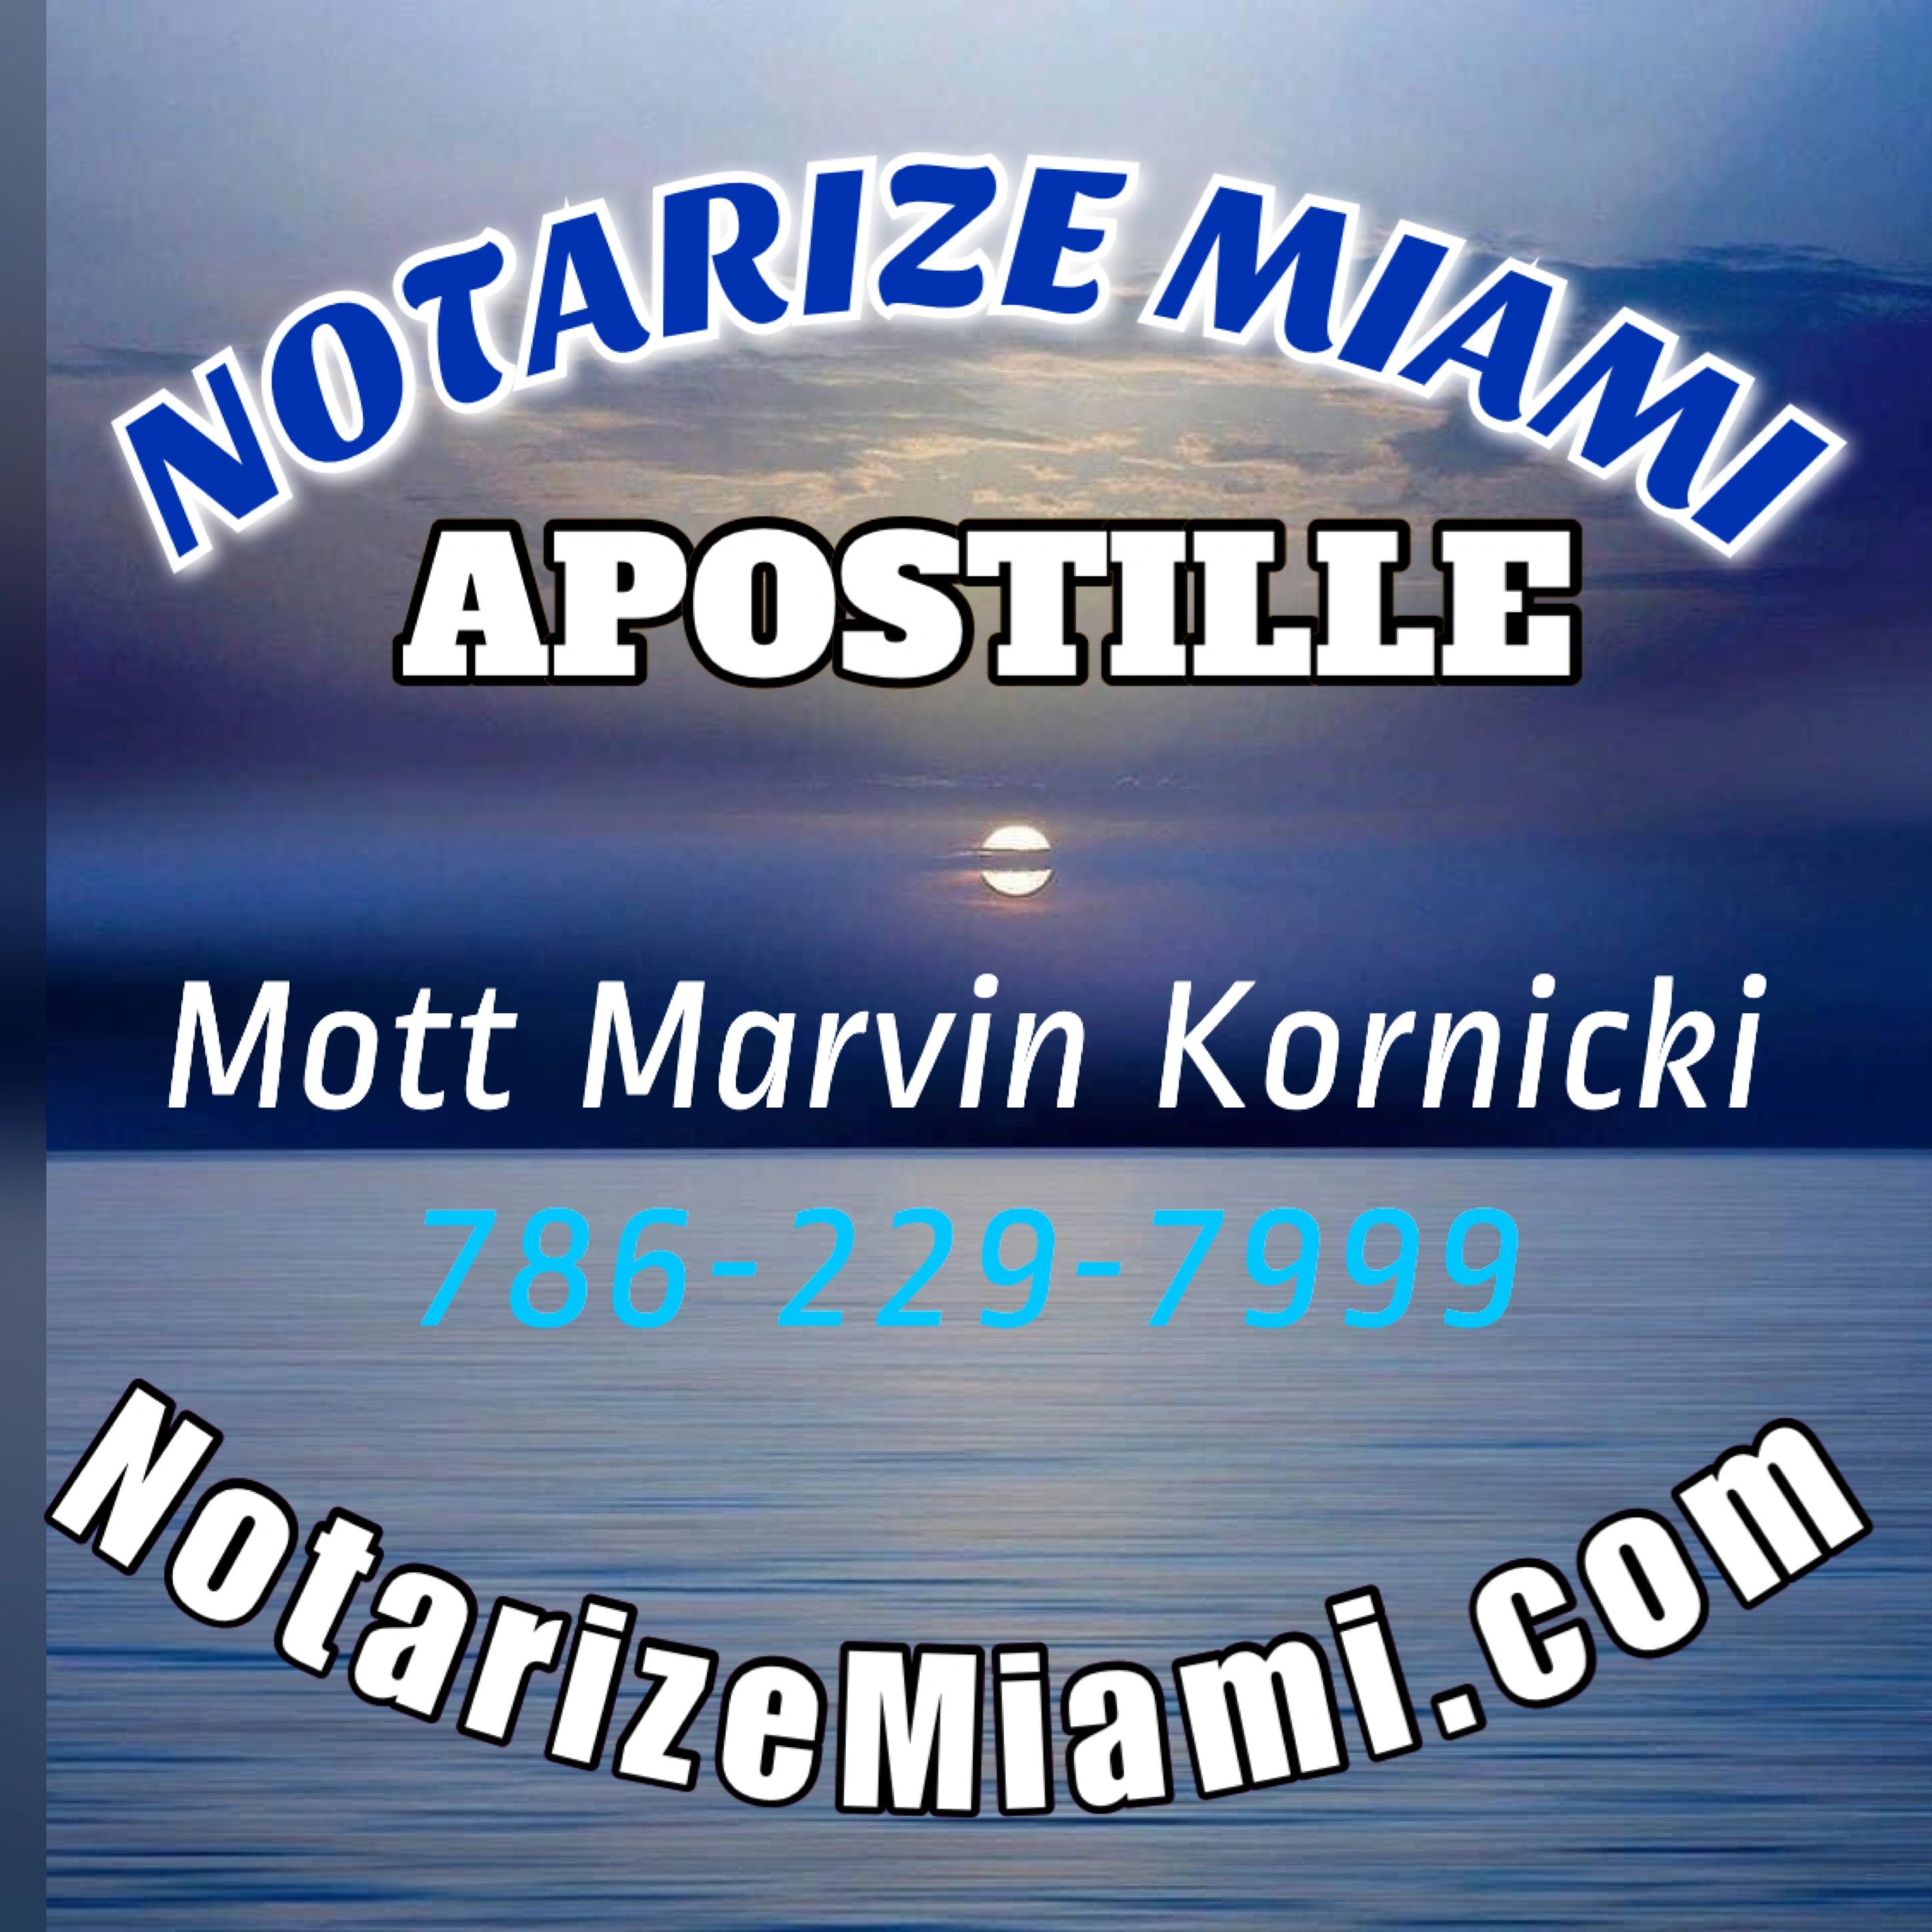 Notarize Miami Apostille - Notarize Miami - NotarizeMiami.com